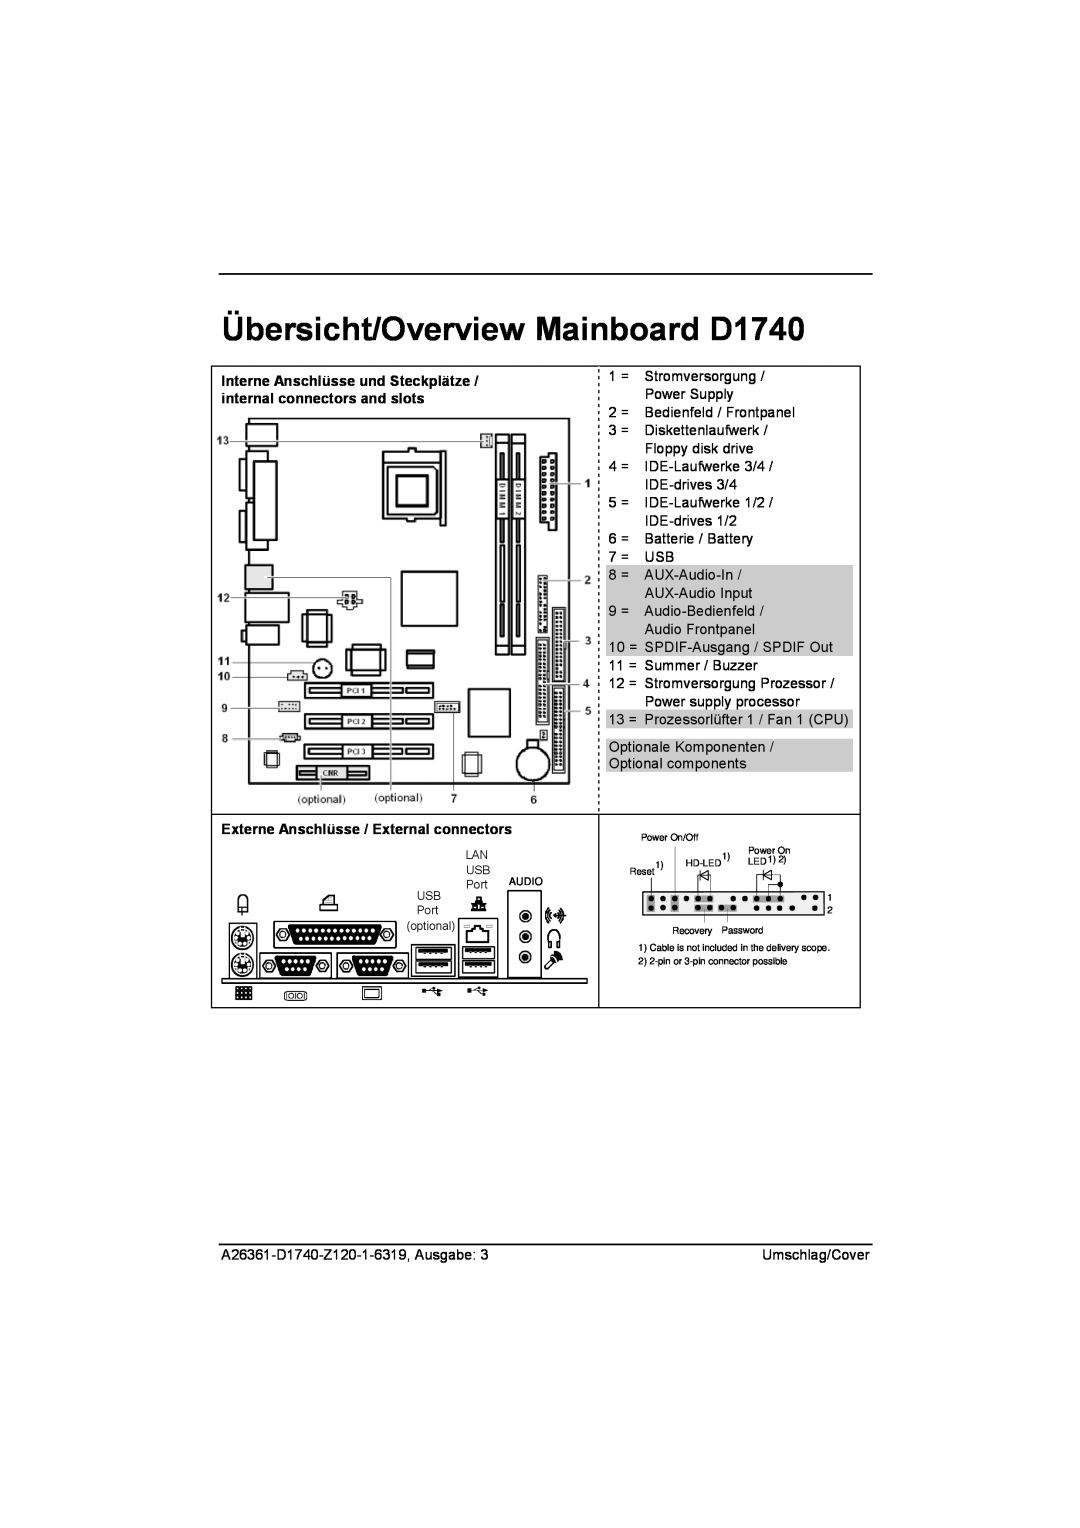 Fujitsu technical manual Übersicht/Overview Mainboard D1740, Externe Anschlüsse / External connectors 